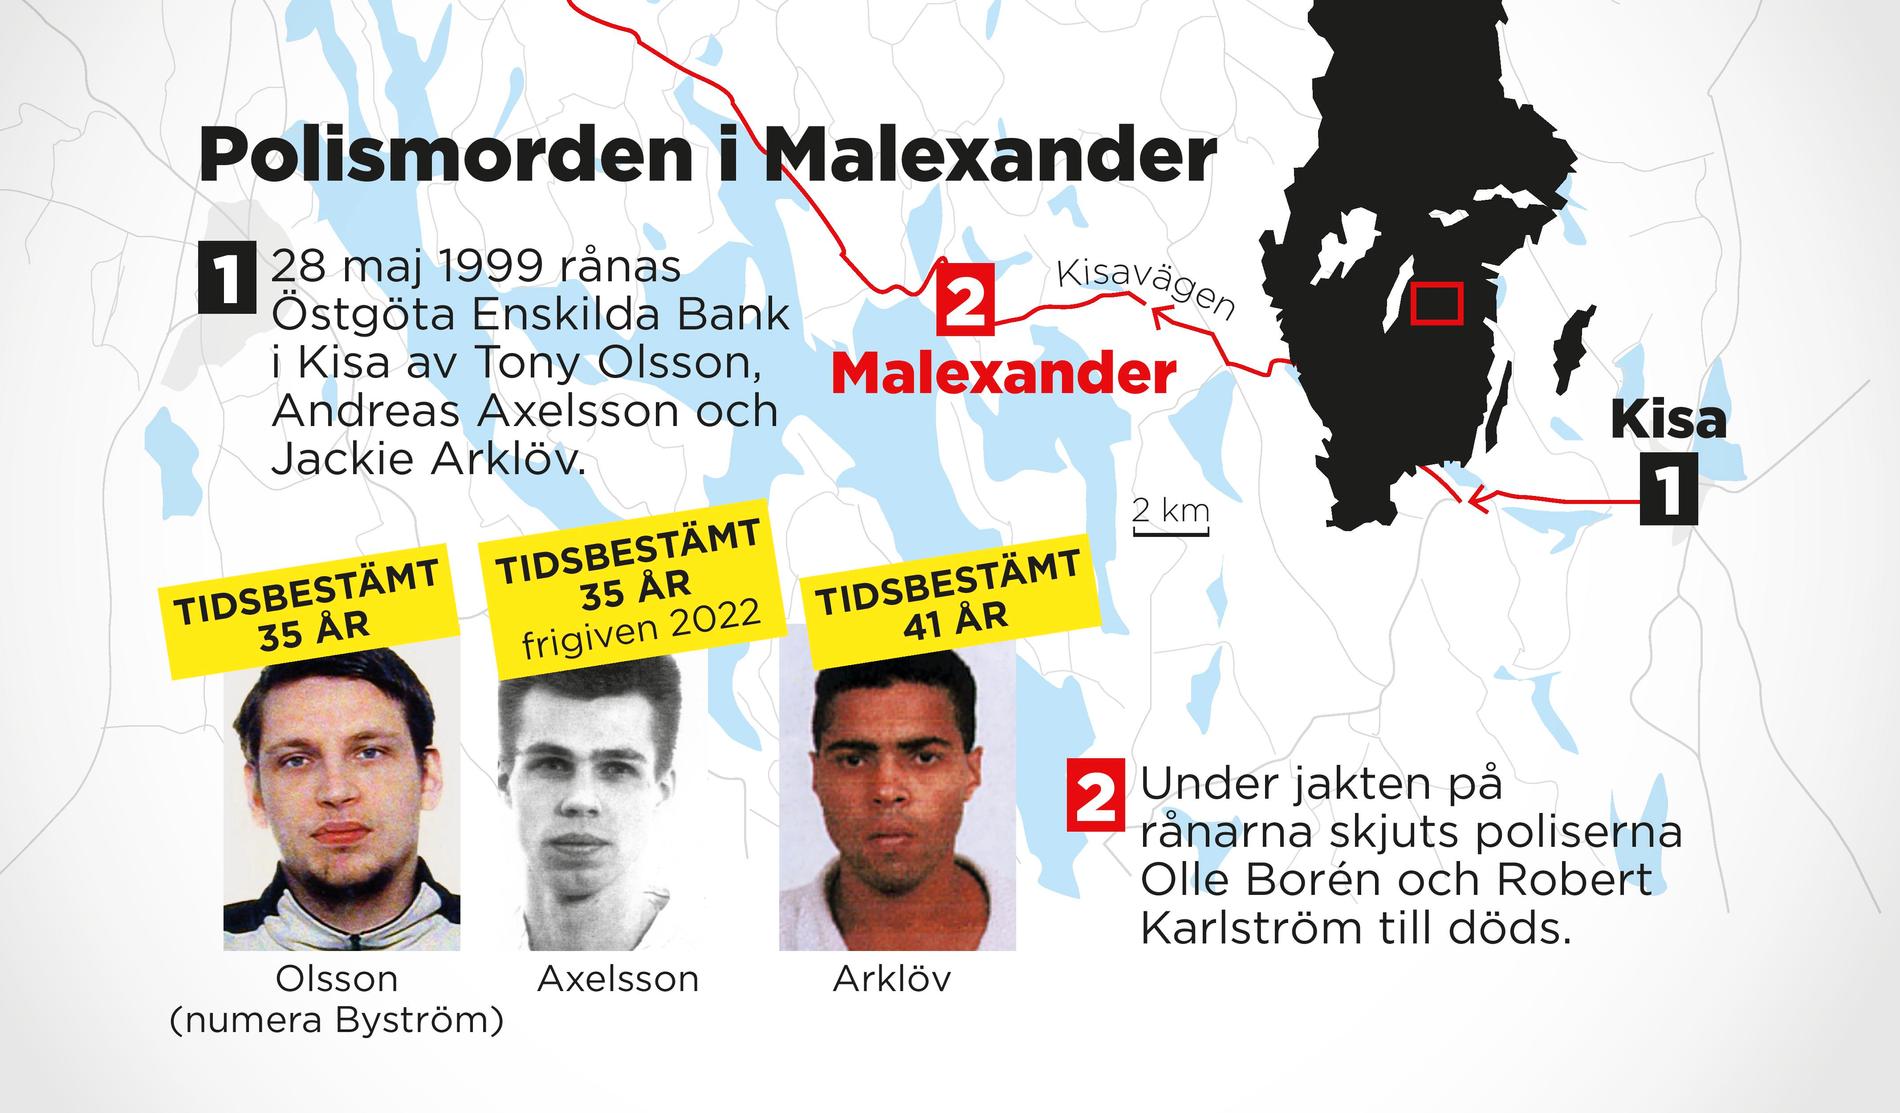 Jackie Arklöv, Tony Olsson och Andreas Axelsson dömdes till livstids fängelse för morden på två poliser i Malexander 1999.